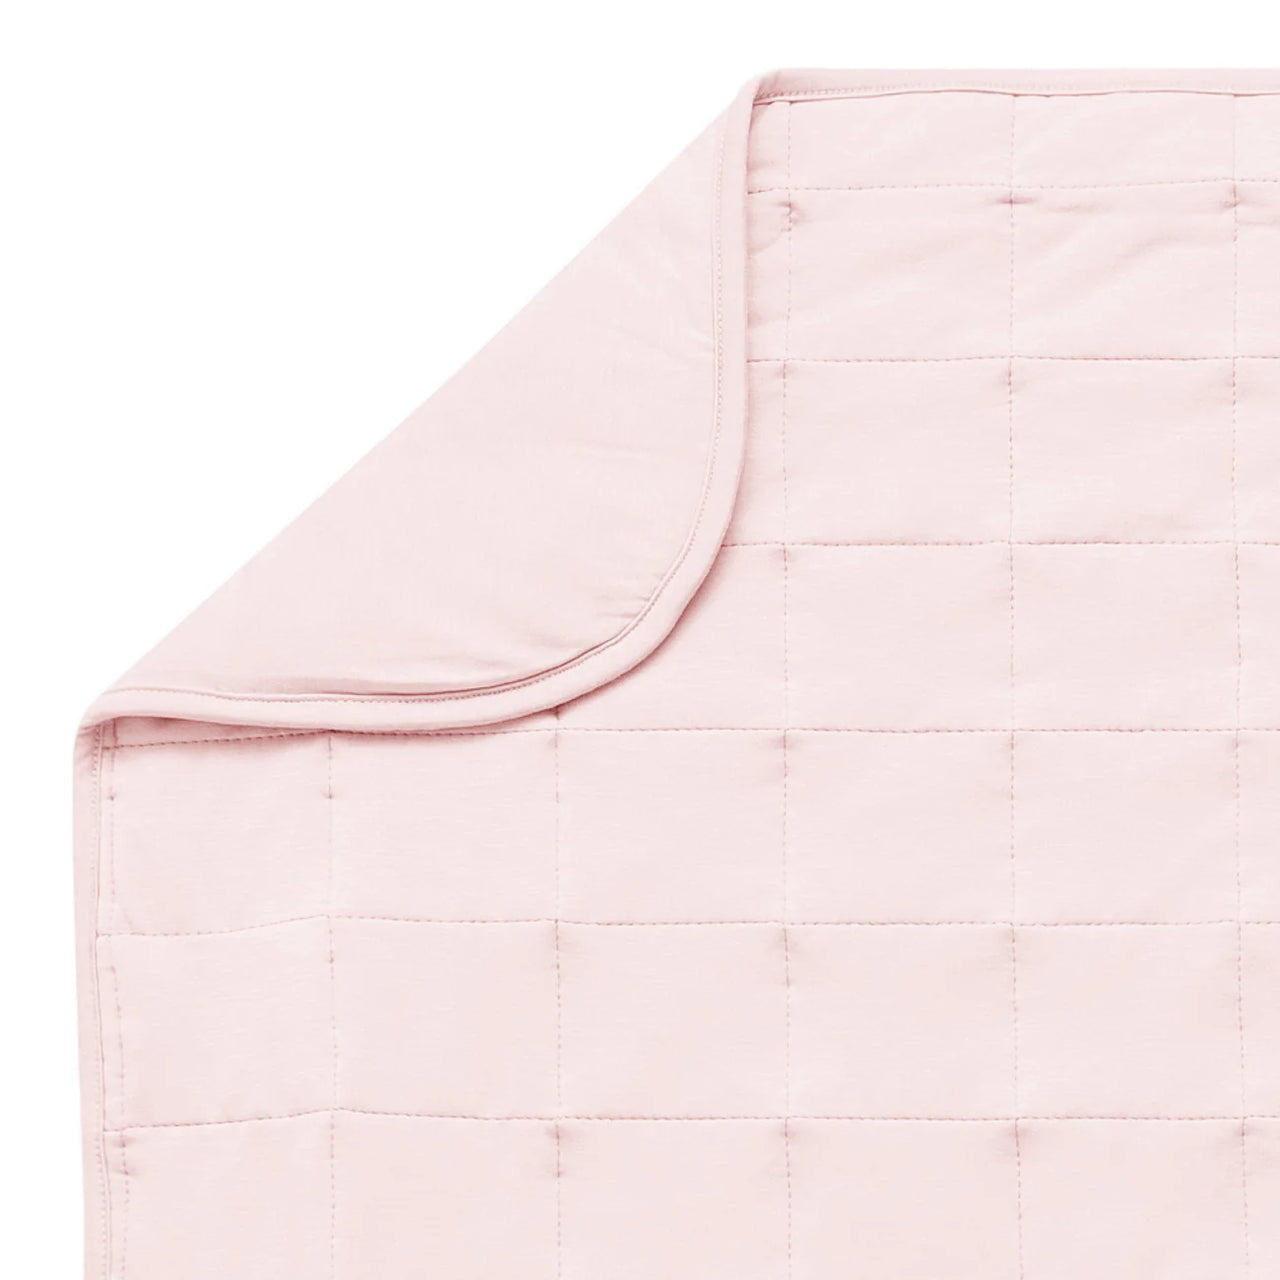 Toddler Blanket 2.5- Blush